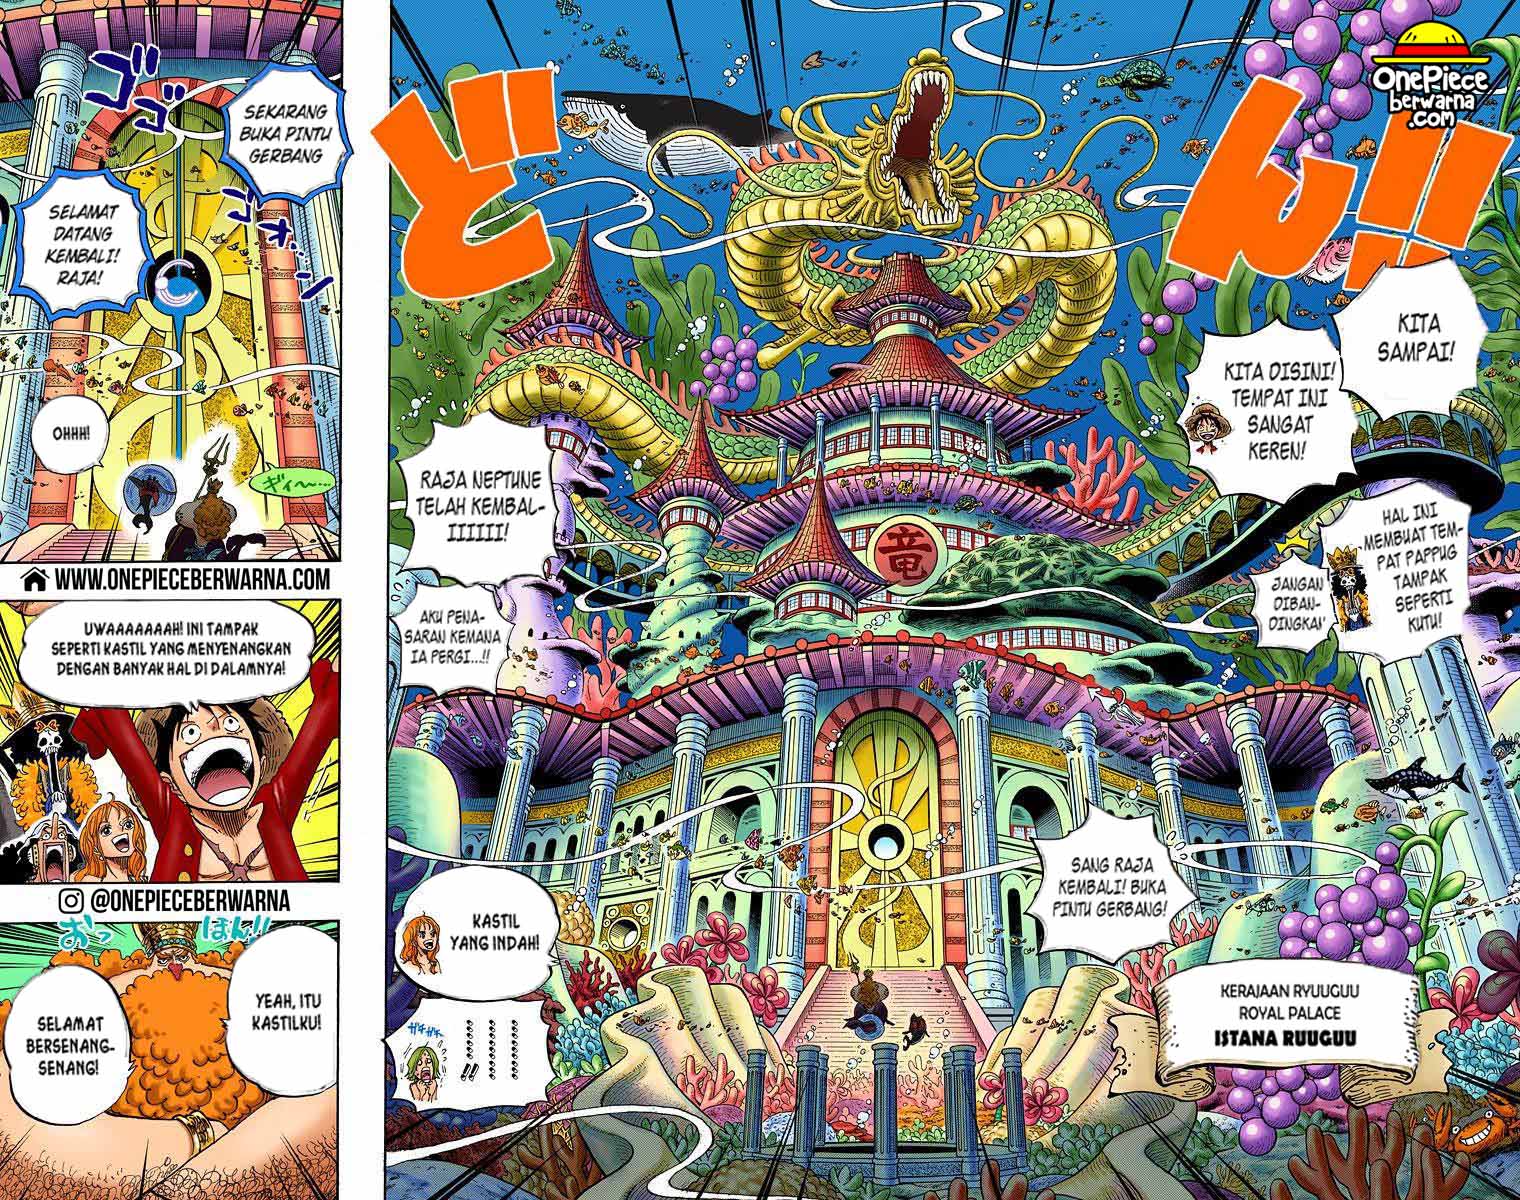 One Piece Berwarna Chapter 612